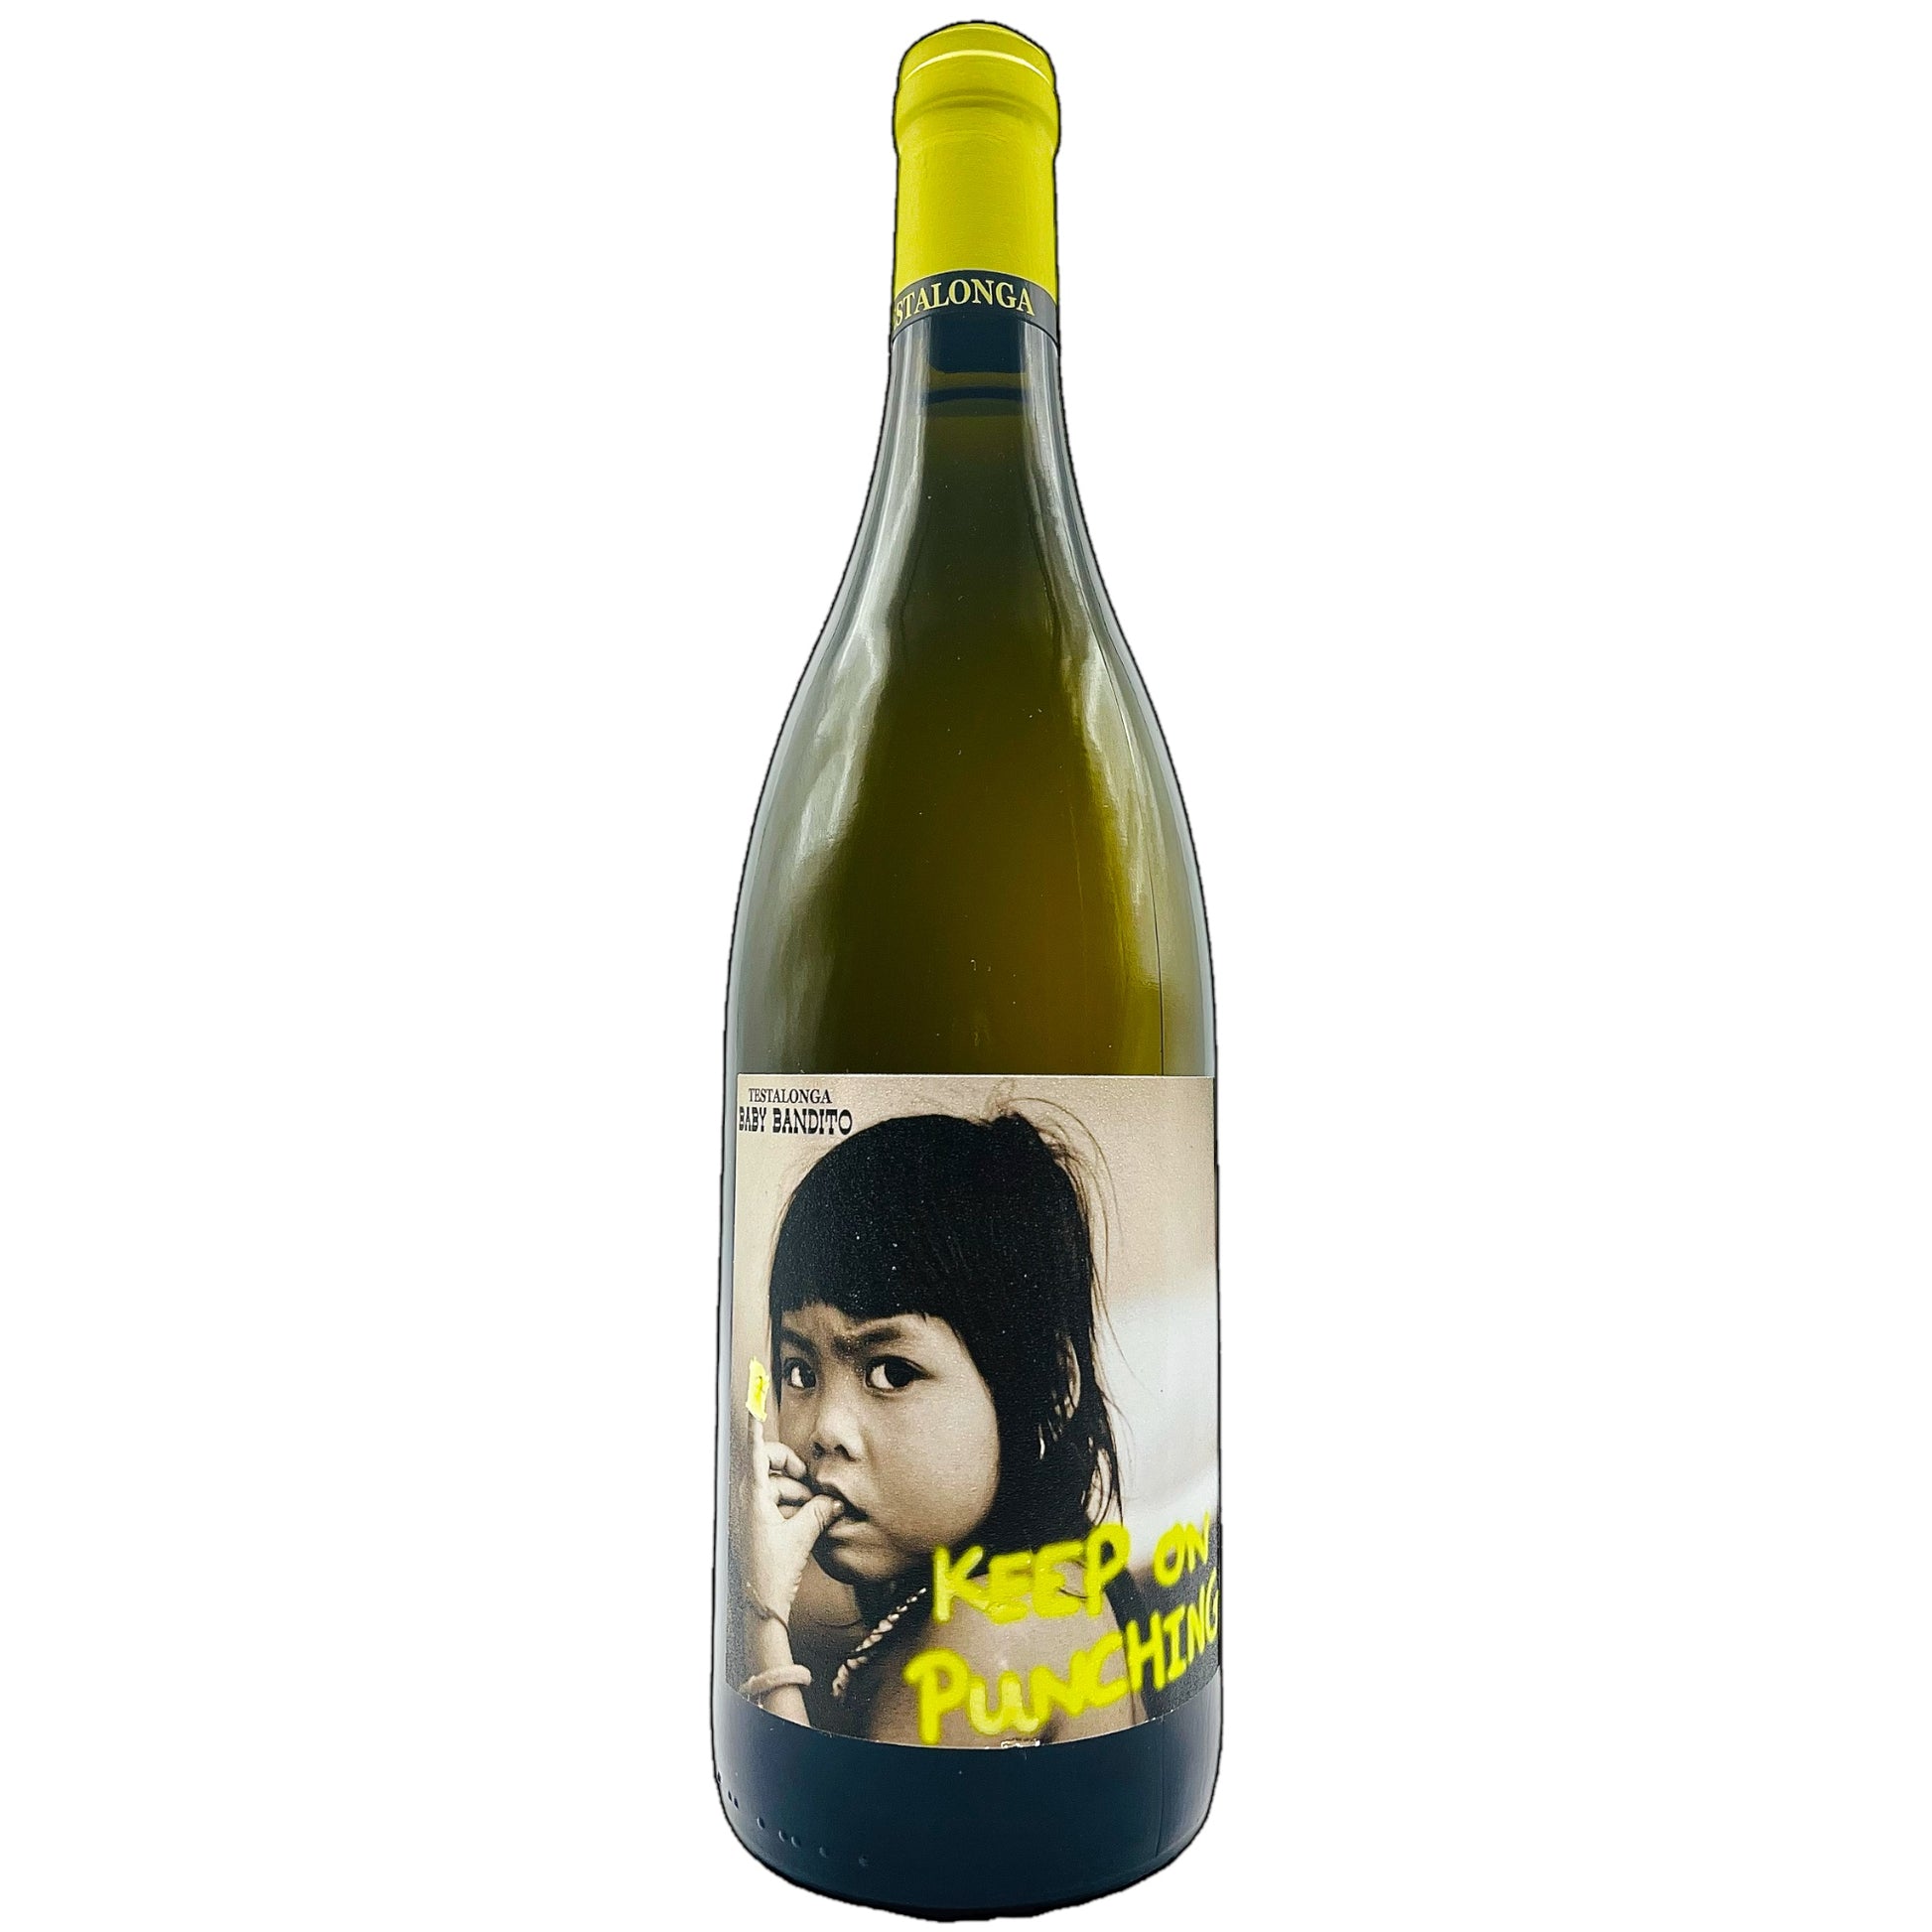 Testalonga, Baby Bandito Keep On Punching 2021 - Painted Wines